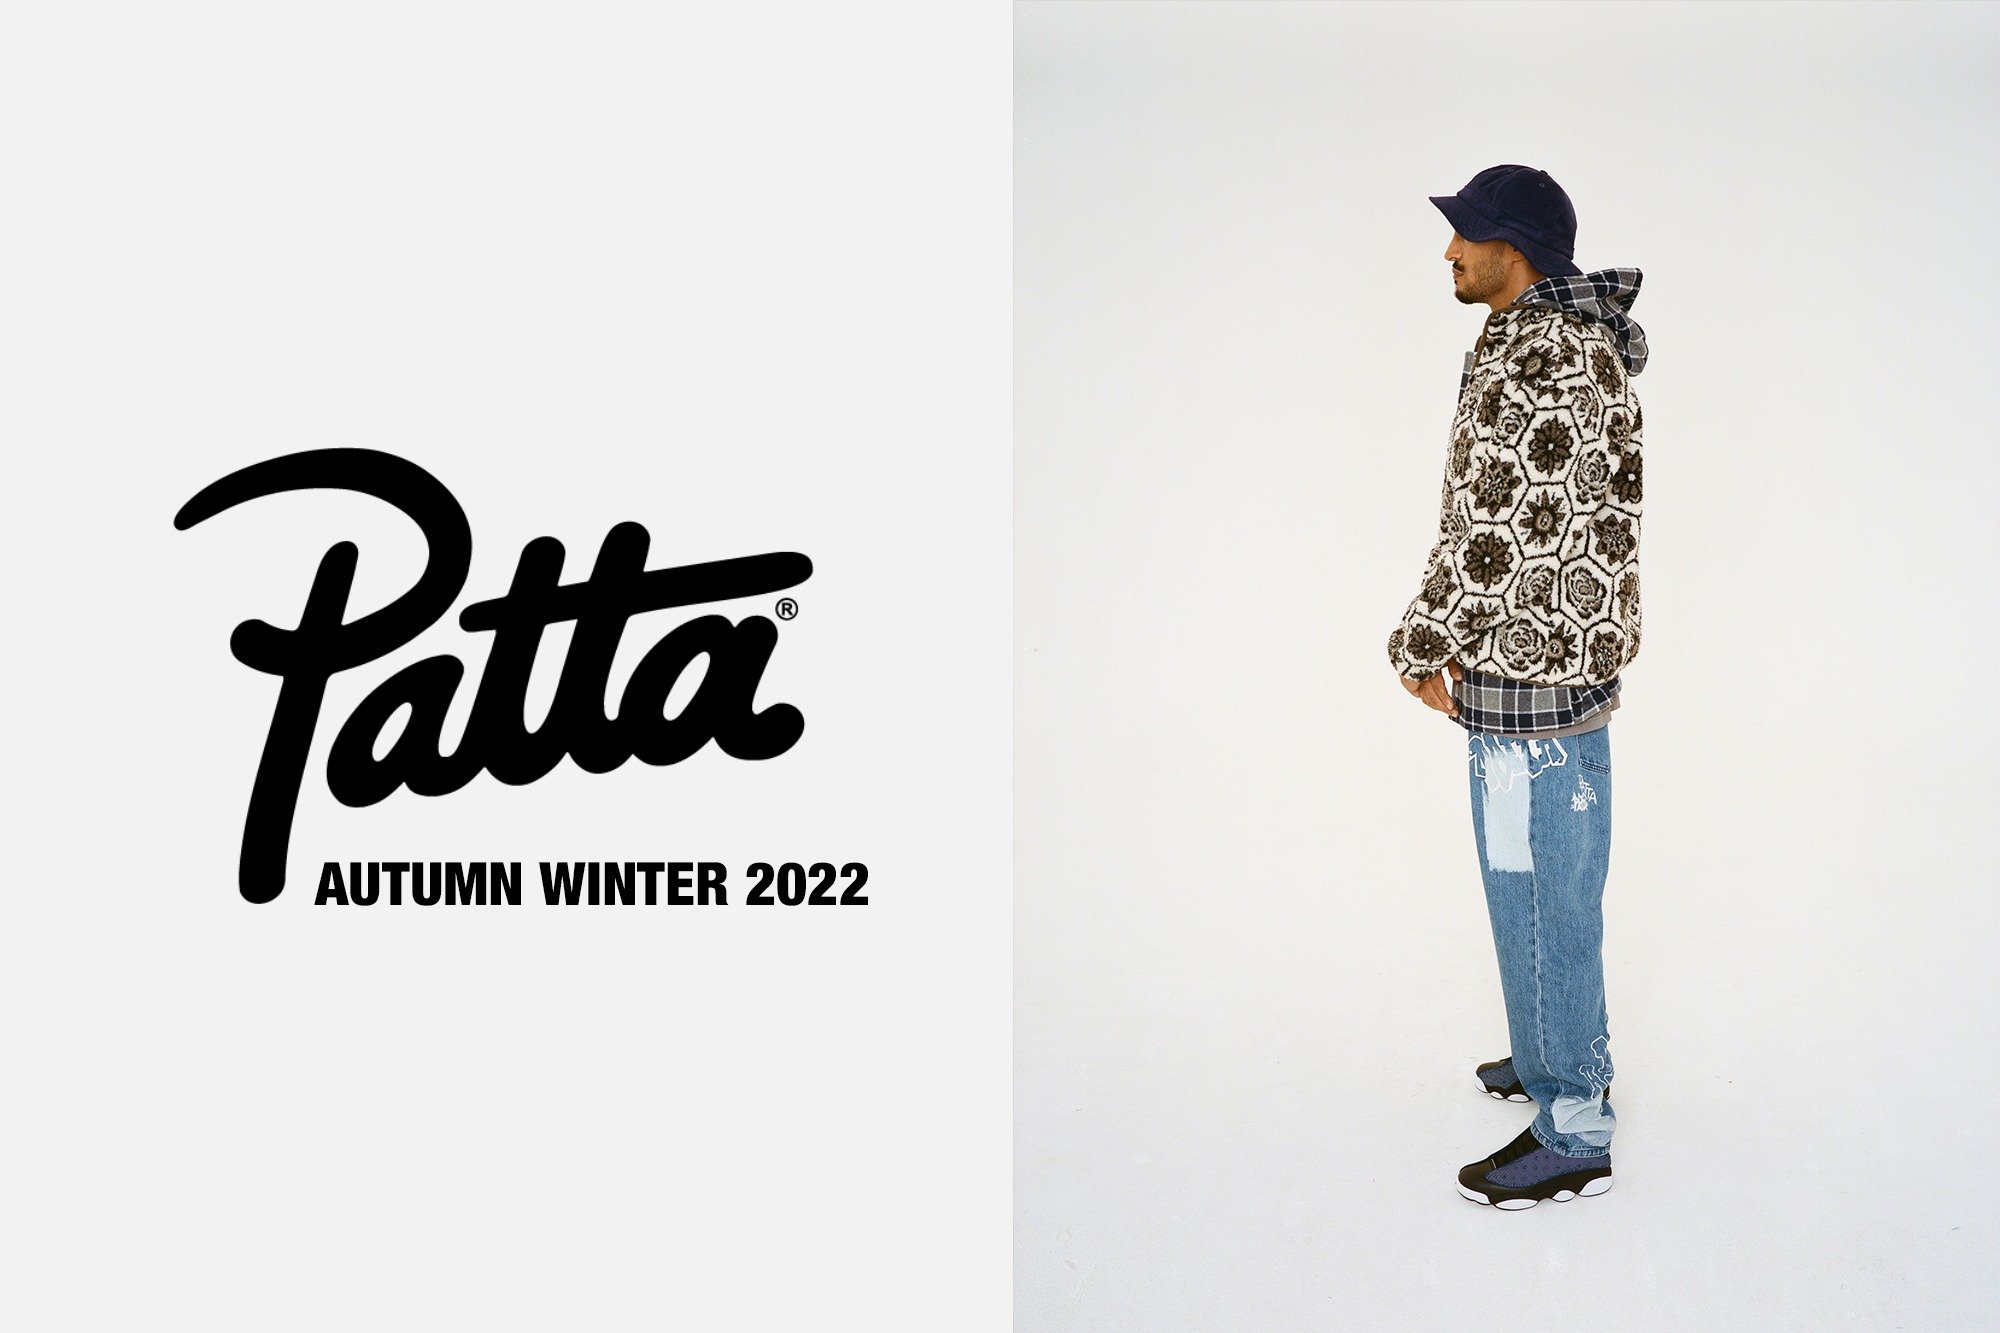 Autumn Winter 2022 Headwear